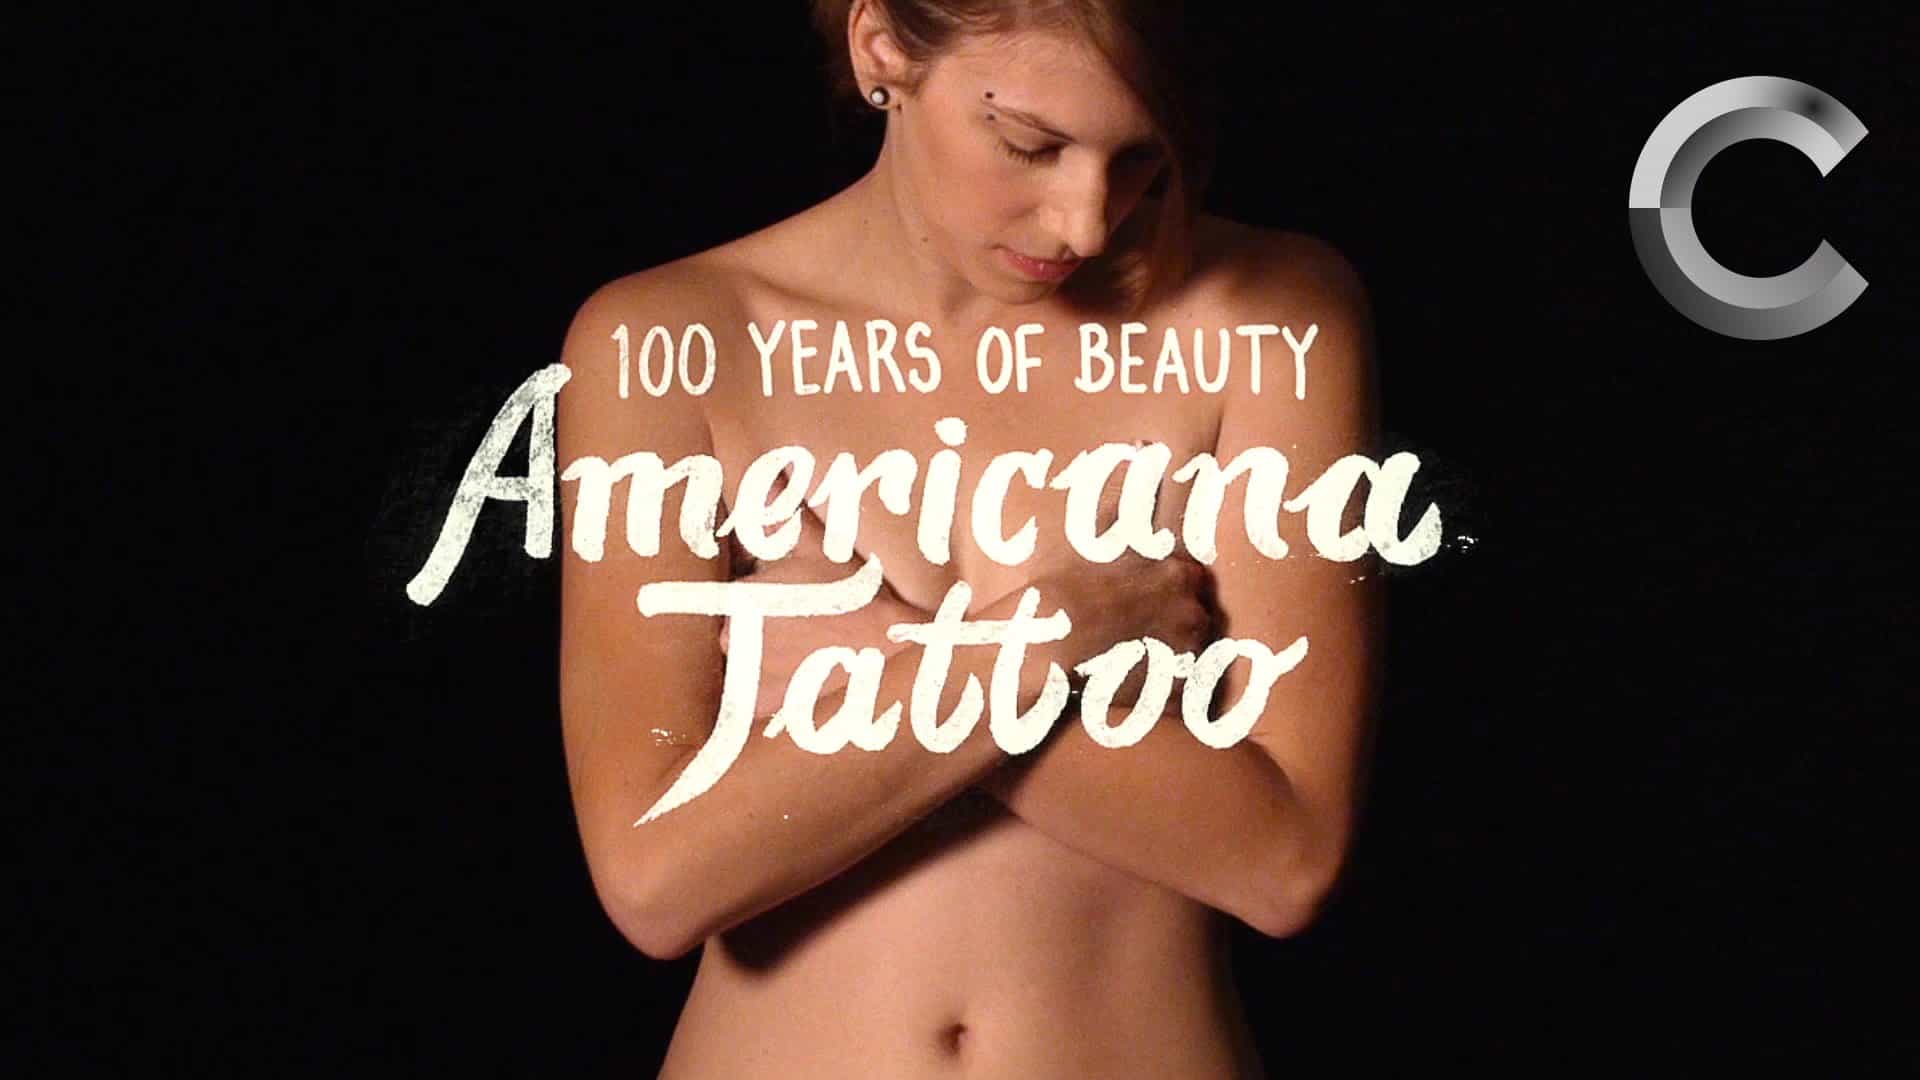 Tatuajes al estilo de los últimos 100 años.